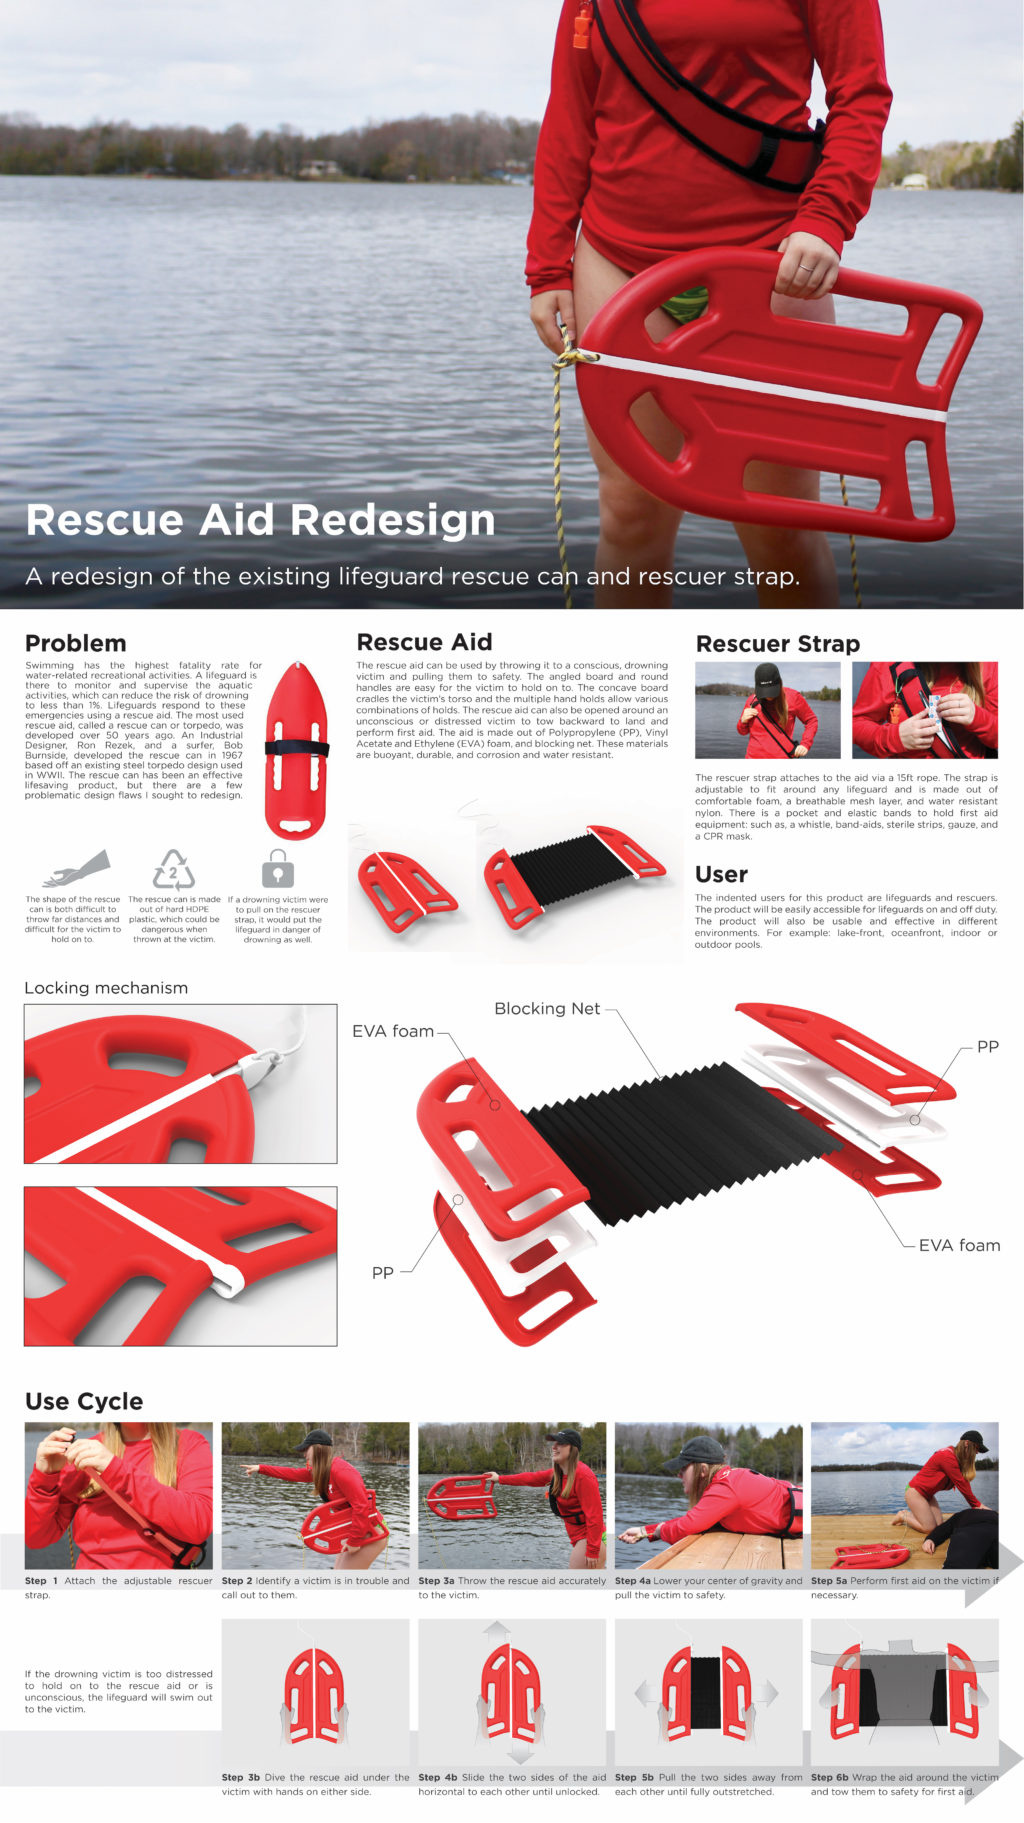 Rescue Aid Redesign